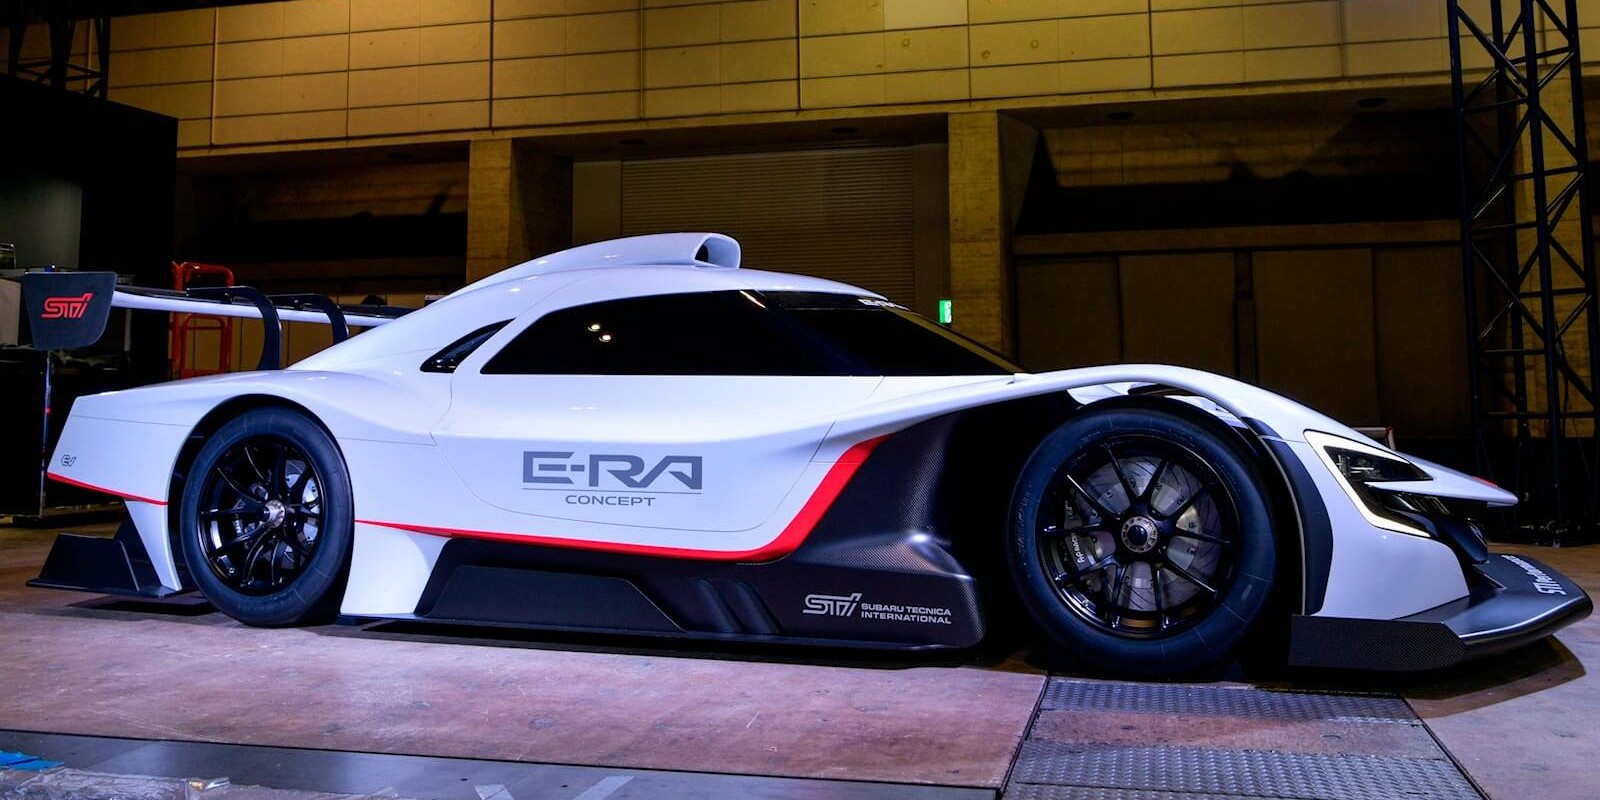 Subaru reveals 1,073 hp STI E-RA electric track car at Tokyo Auto Salon